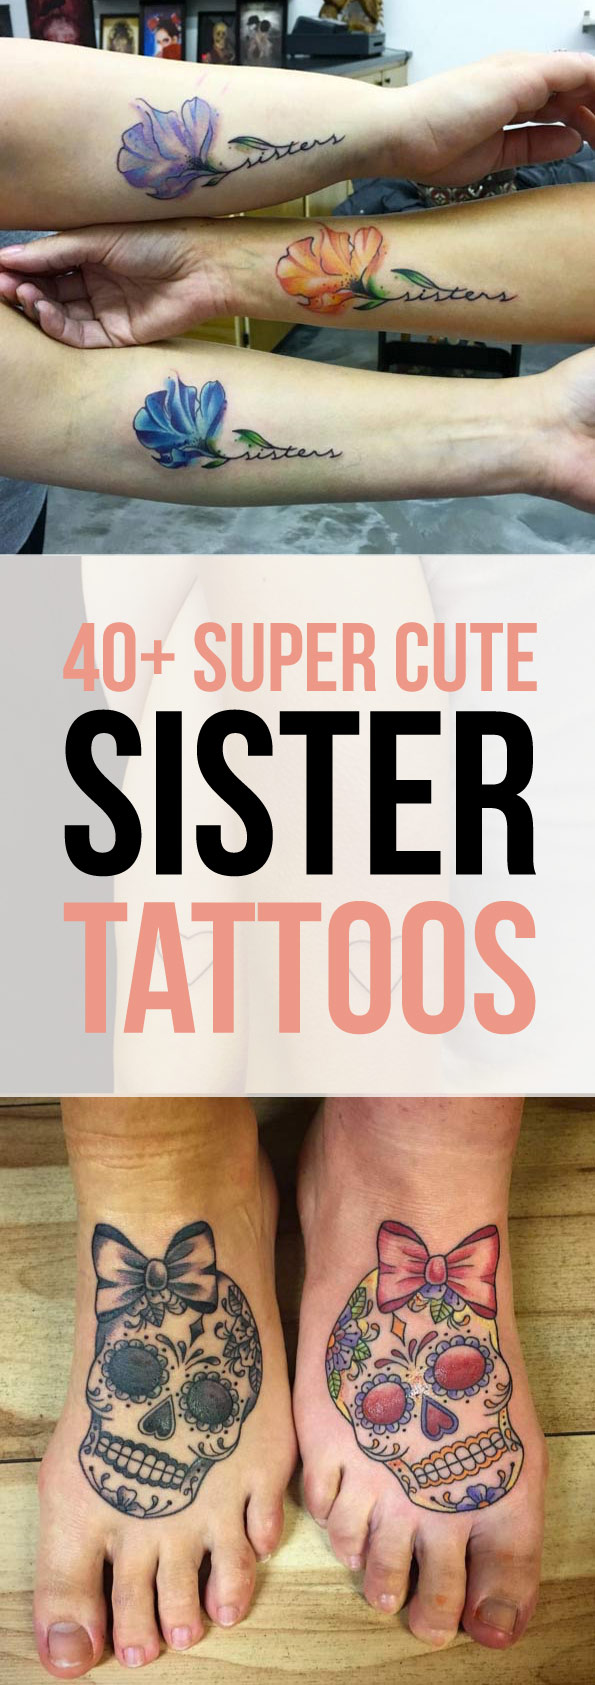 40+ Super Cute Sister Tattoos - TattooBlend